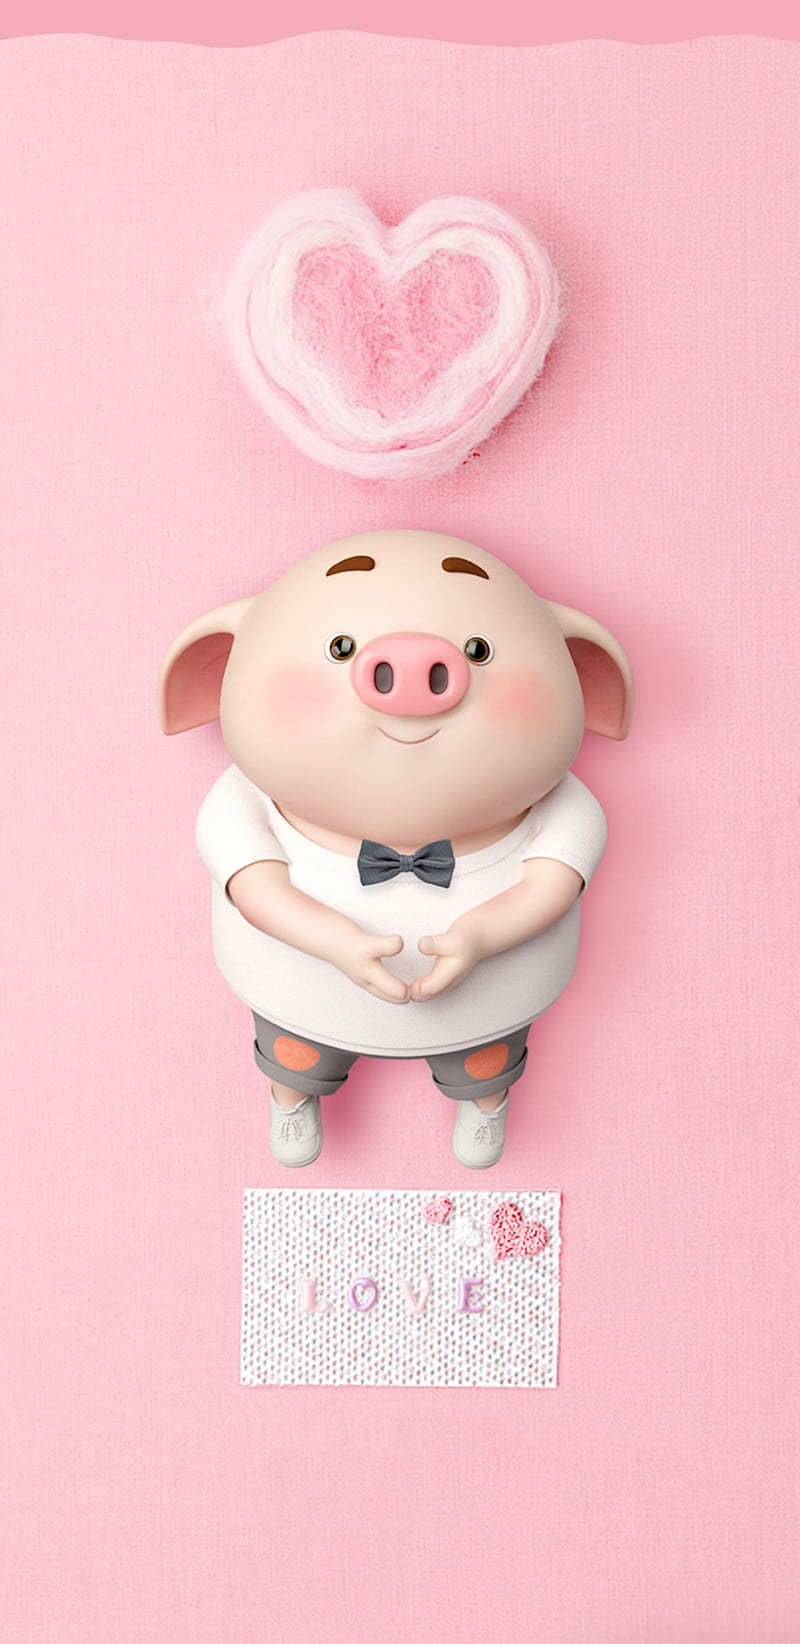 CuteLittlePiggy, cute, pig, piggy, pink, heart, HD phone wallpaper